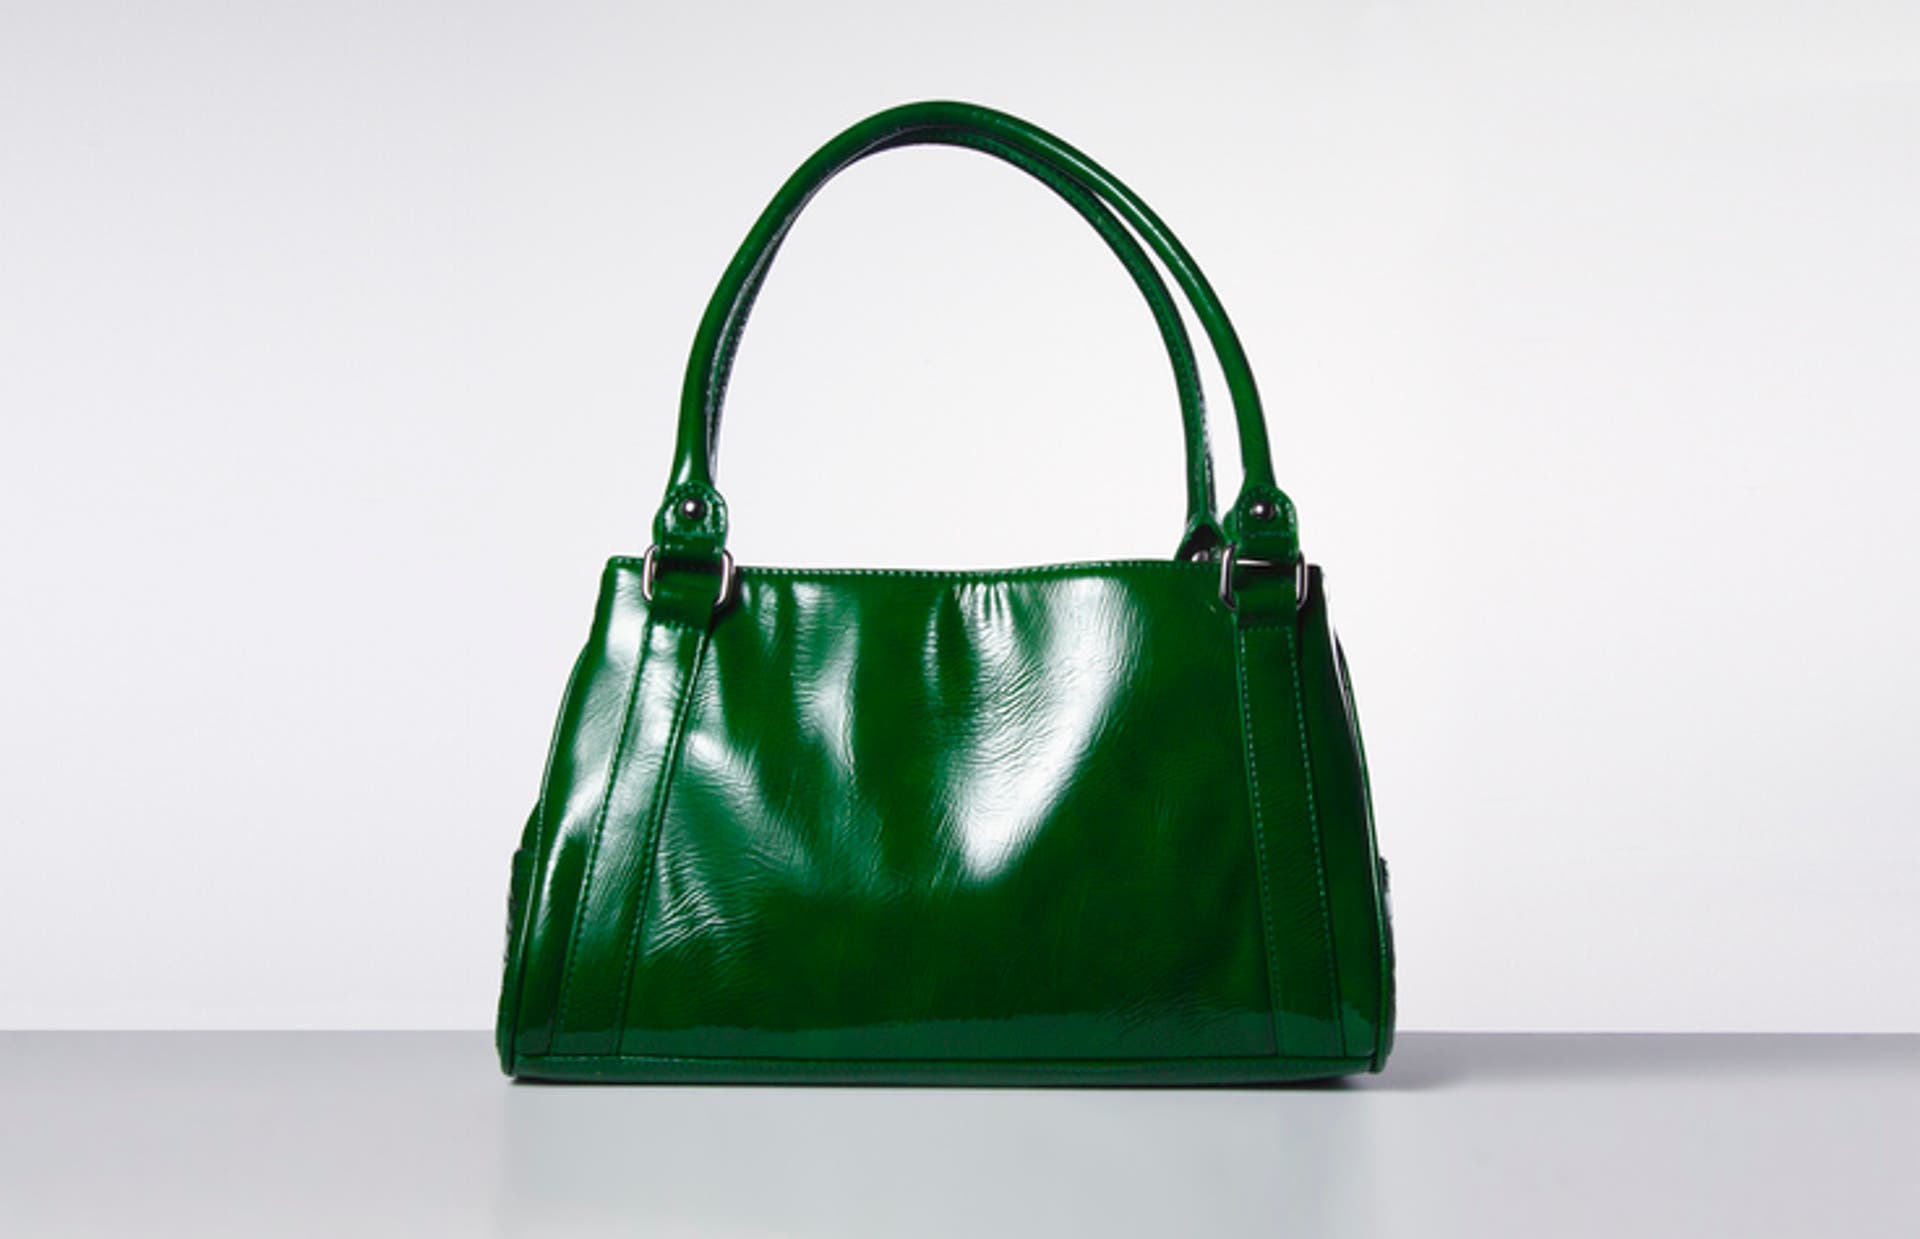  Green handbag on white. 